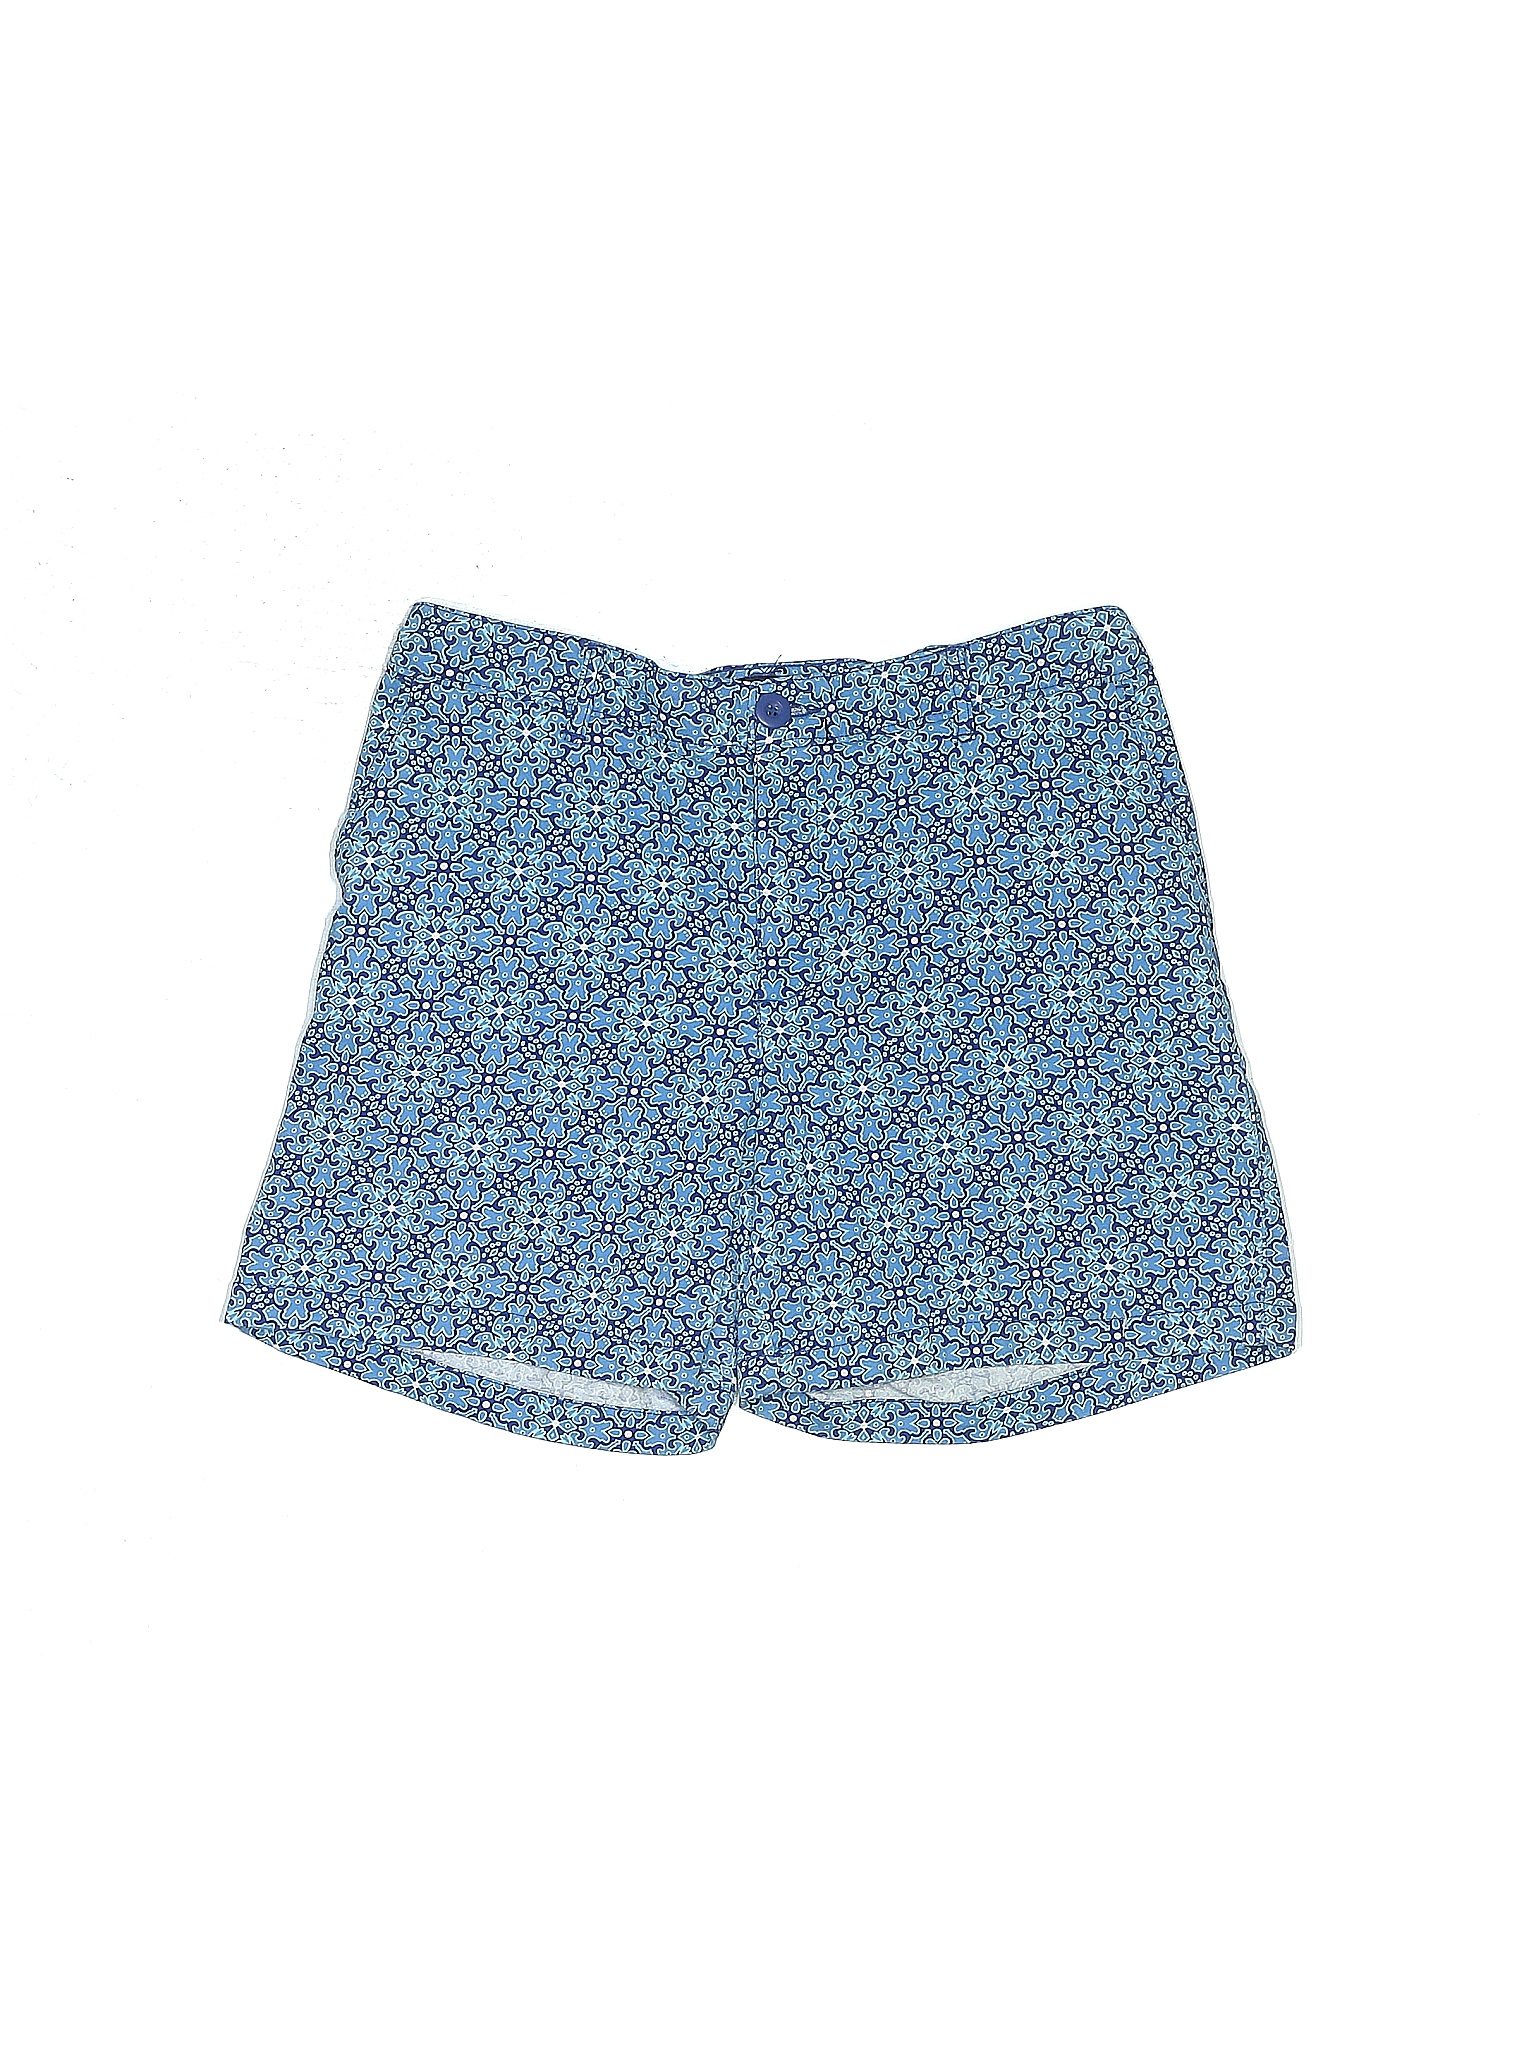 Basic Editions Blue Khaki Shorts Size S - 47% off | thredUP